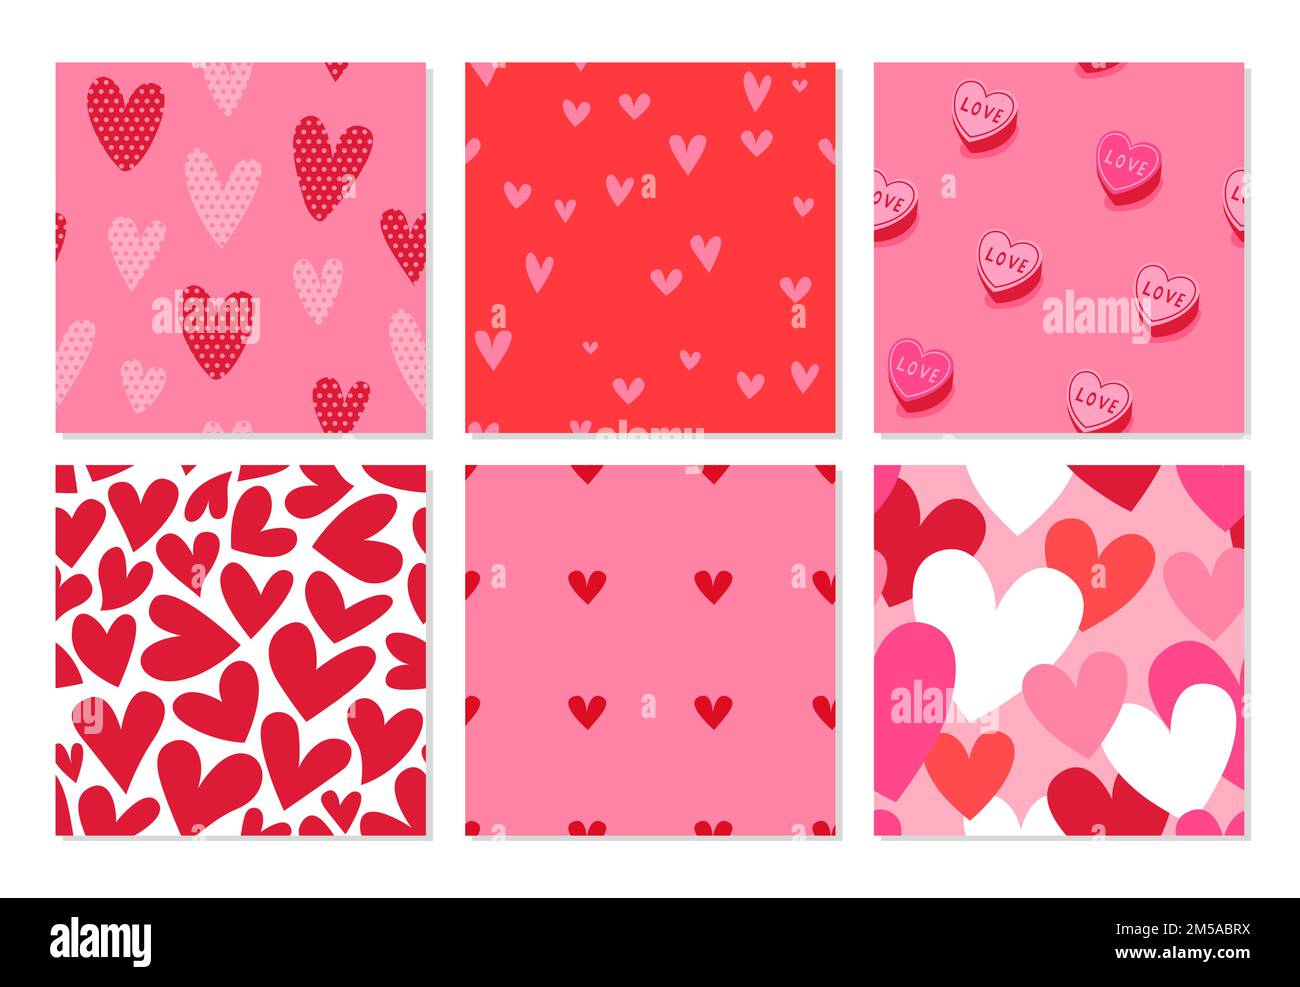 Rosa valentinstag Herz Form Cartoon nahtlose Muster Set. Cute romantische Doodle Hintergrund Kollektion für Urlaub drucken oder Liebe Konzept. Stock Vektor